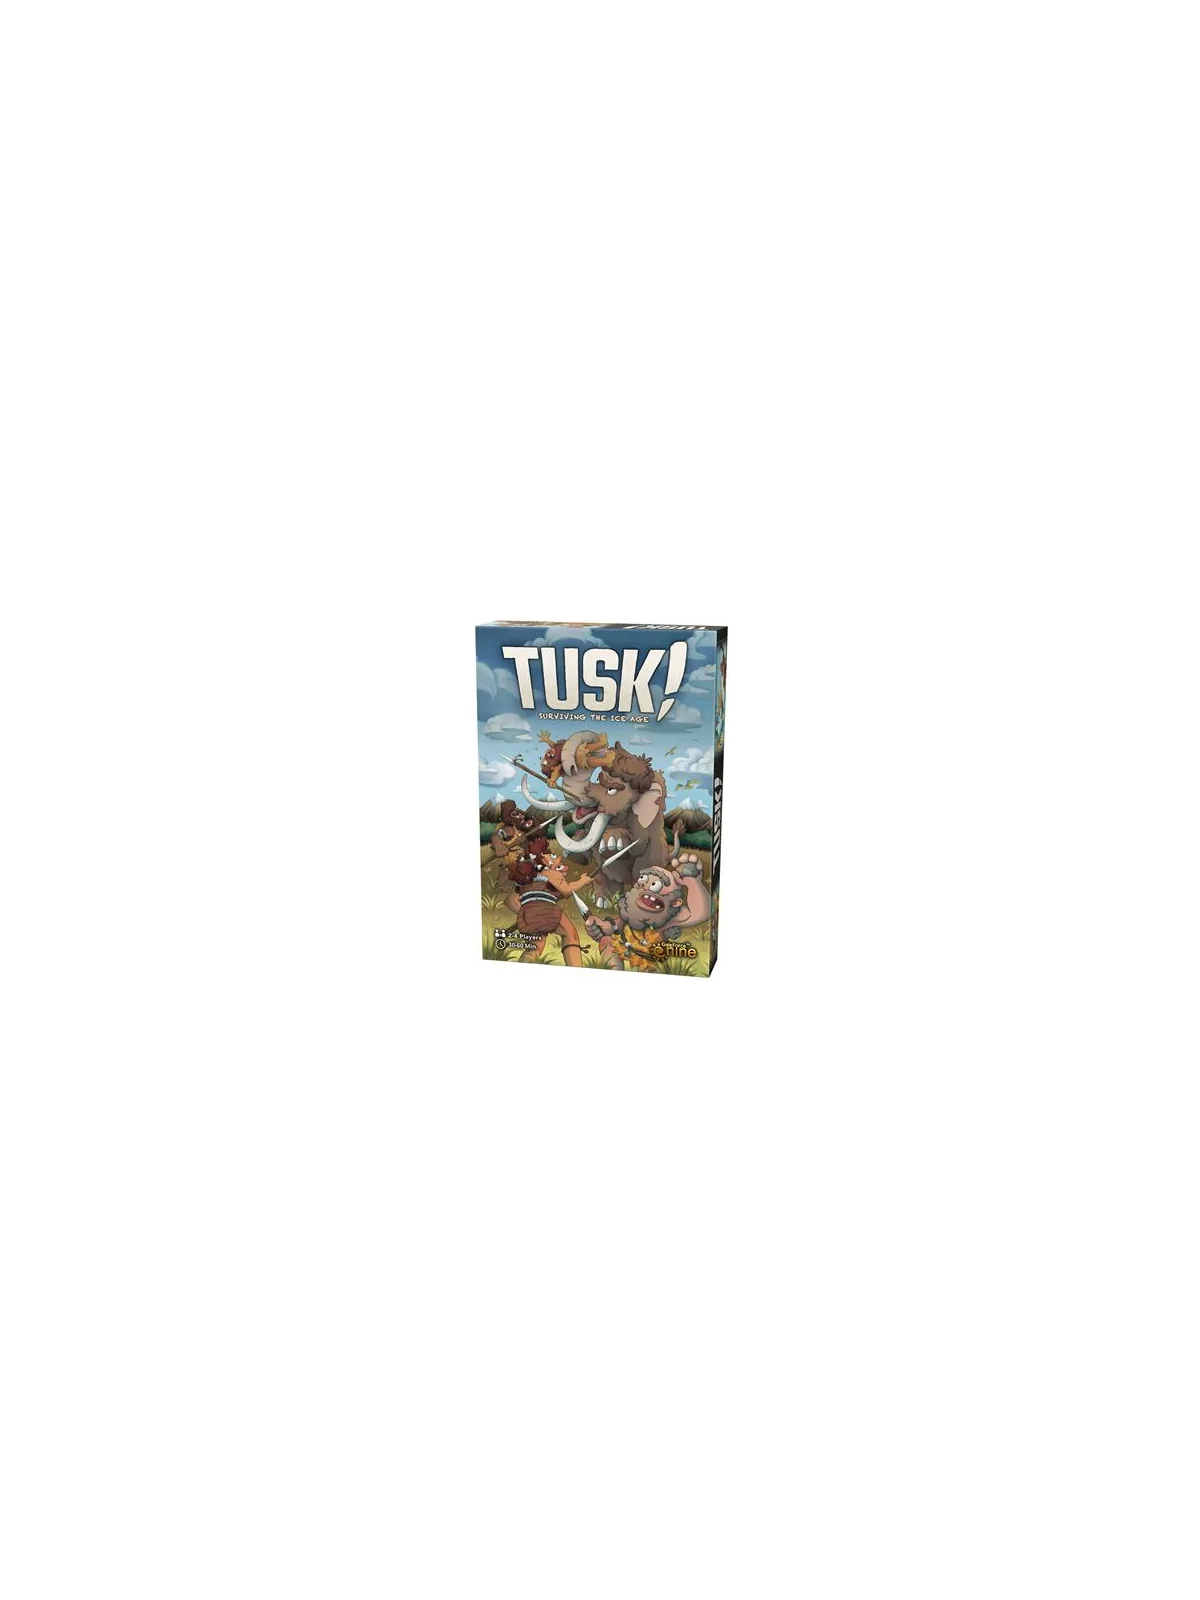 Comprar Tusk!: Surviving The Ice Age (Inglés) barato al mejor precio 3